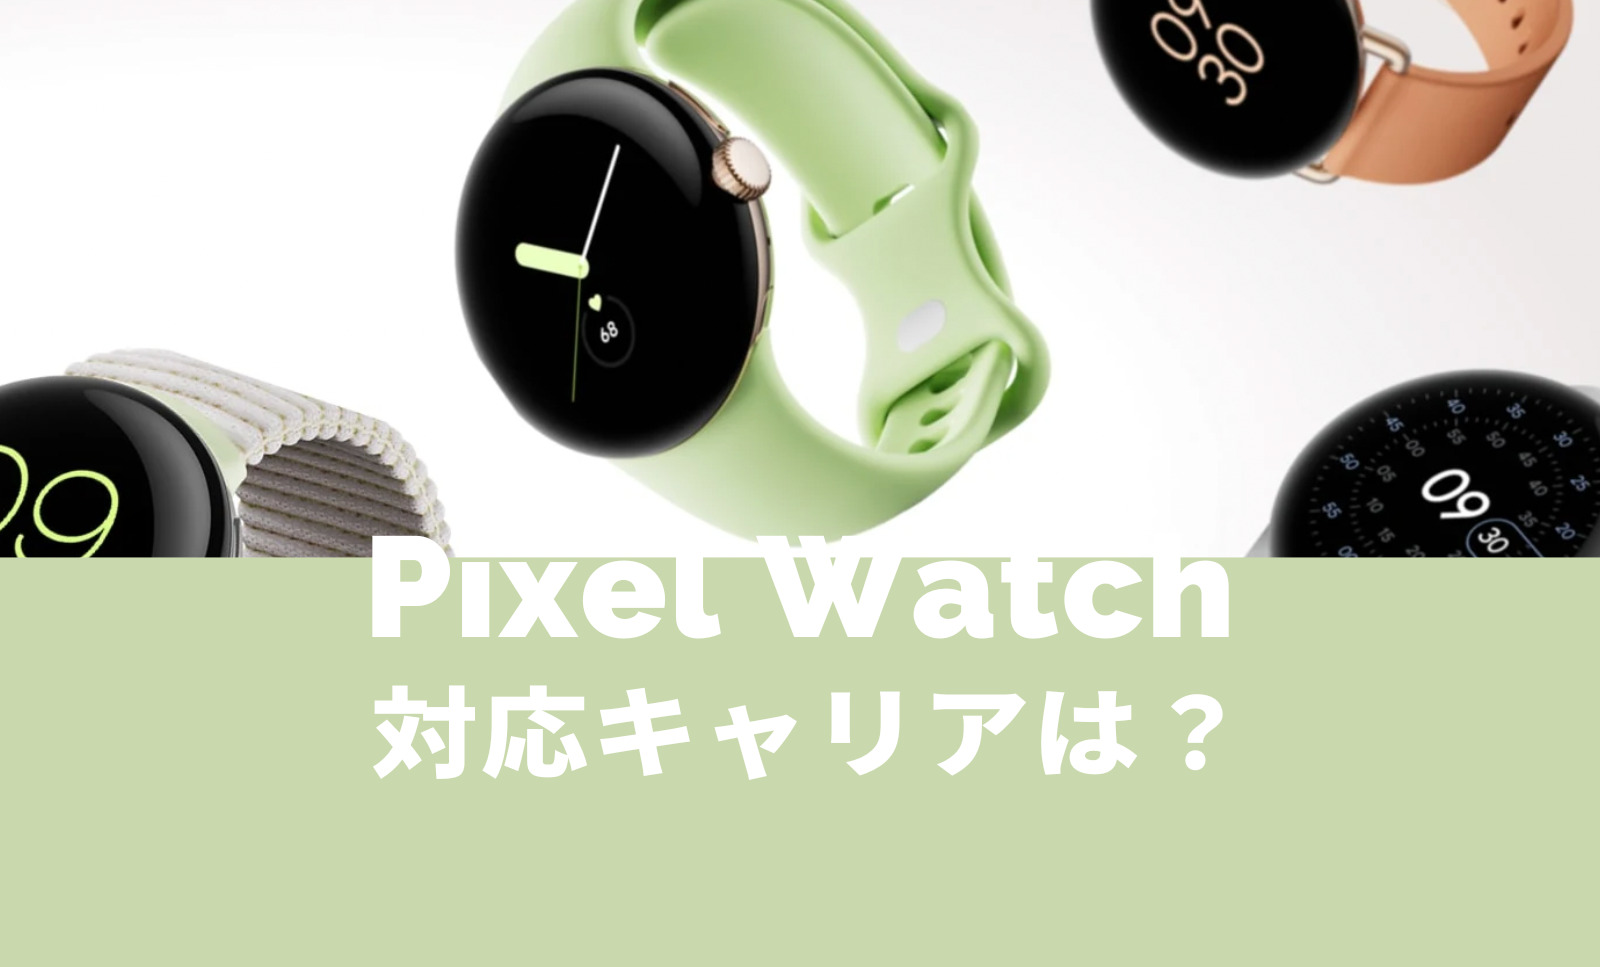 Pixel Watch(ピクセルウォッチ)が発売されるキャリアは？【Google】のサムネイル画像